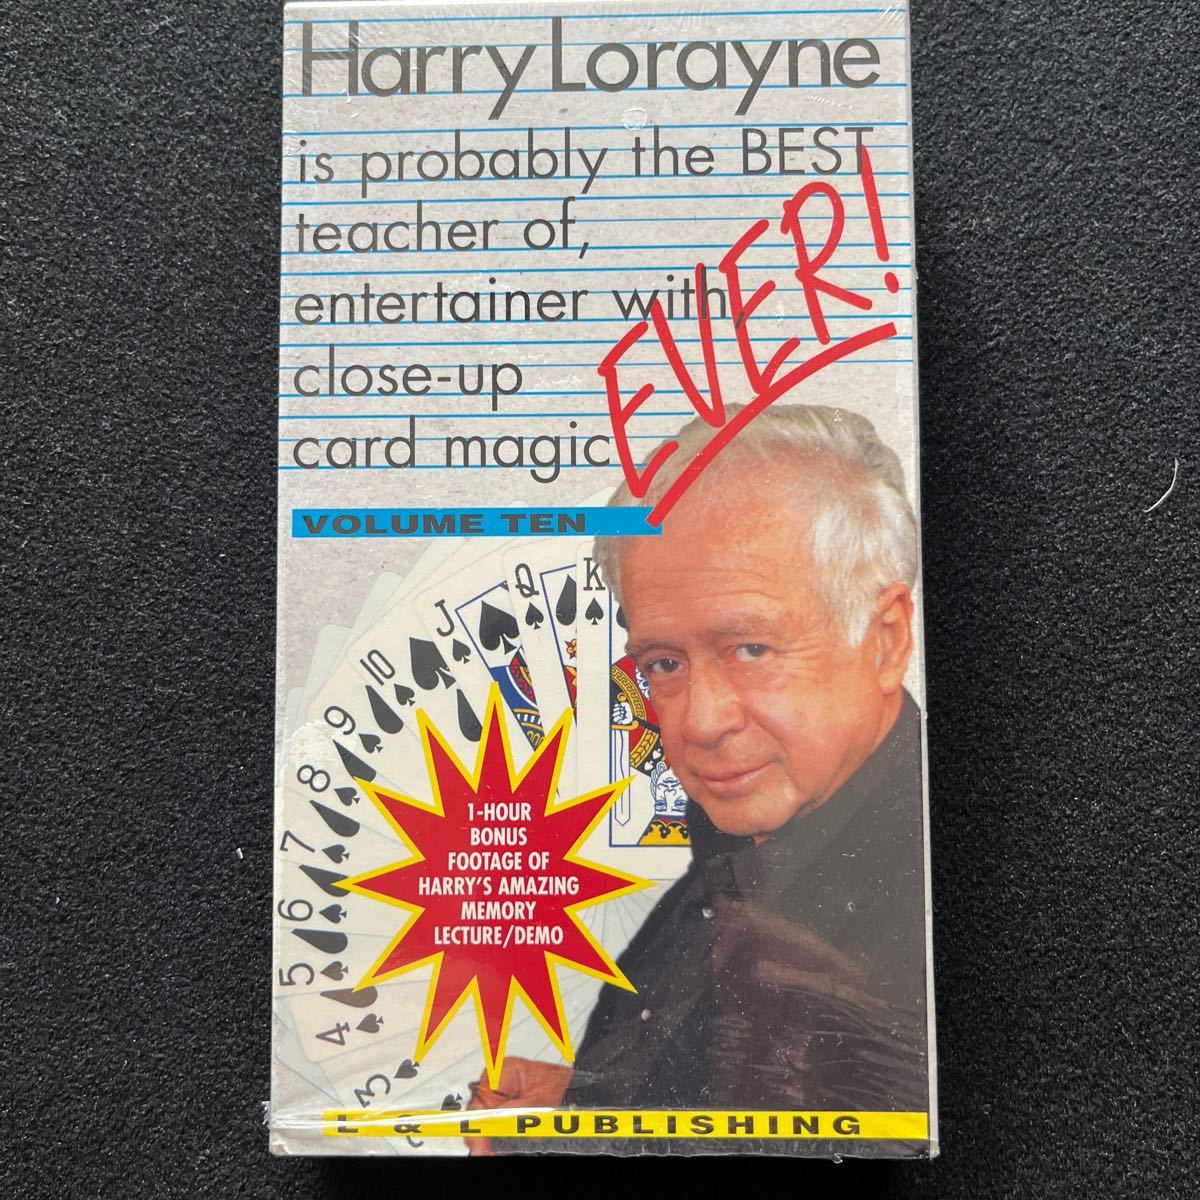 【マジックビデオ】Harry Lorayne is probably the BEST teacher of, entertainer with close-up card magic EVER! Vol.10の画像1